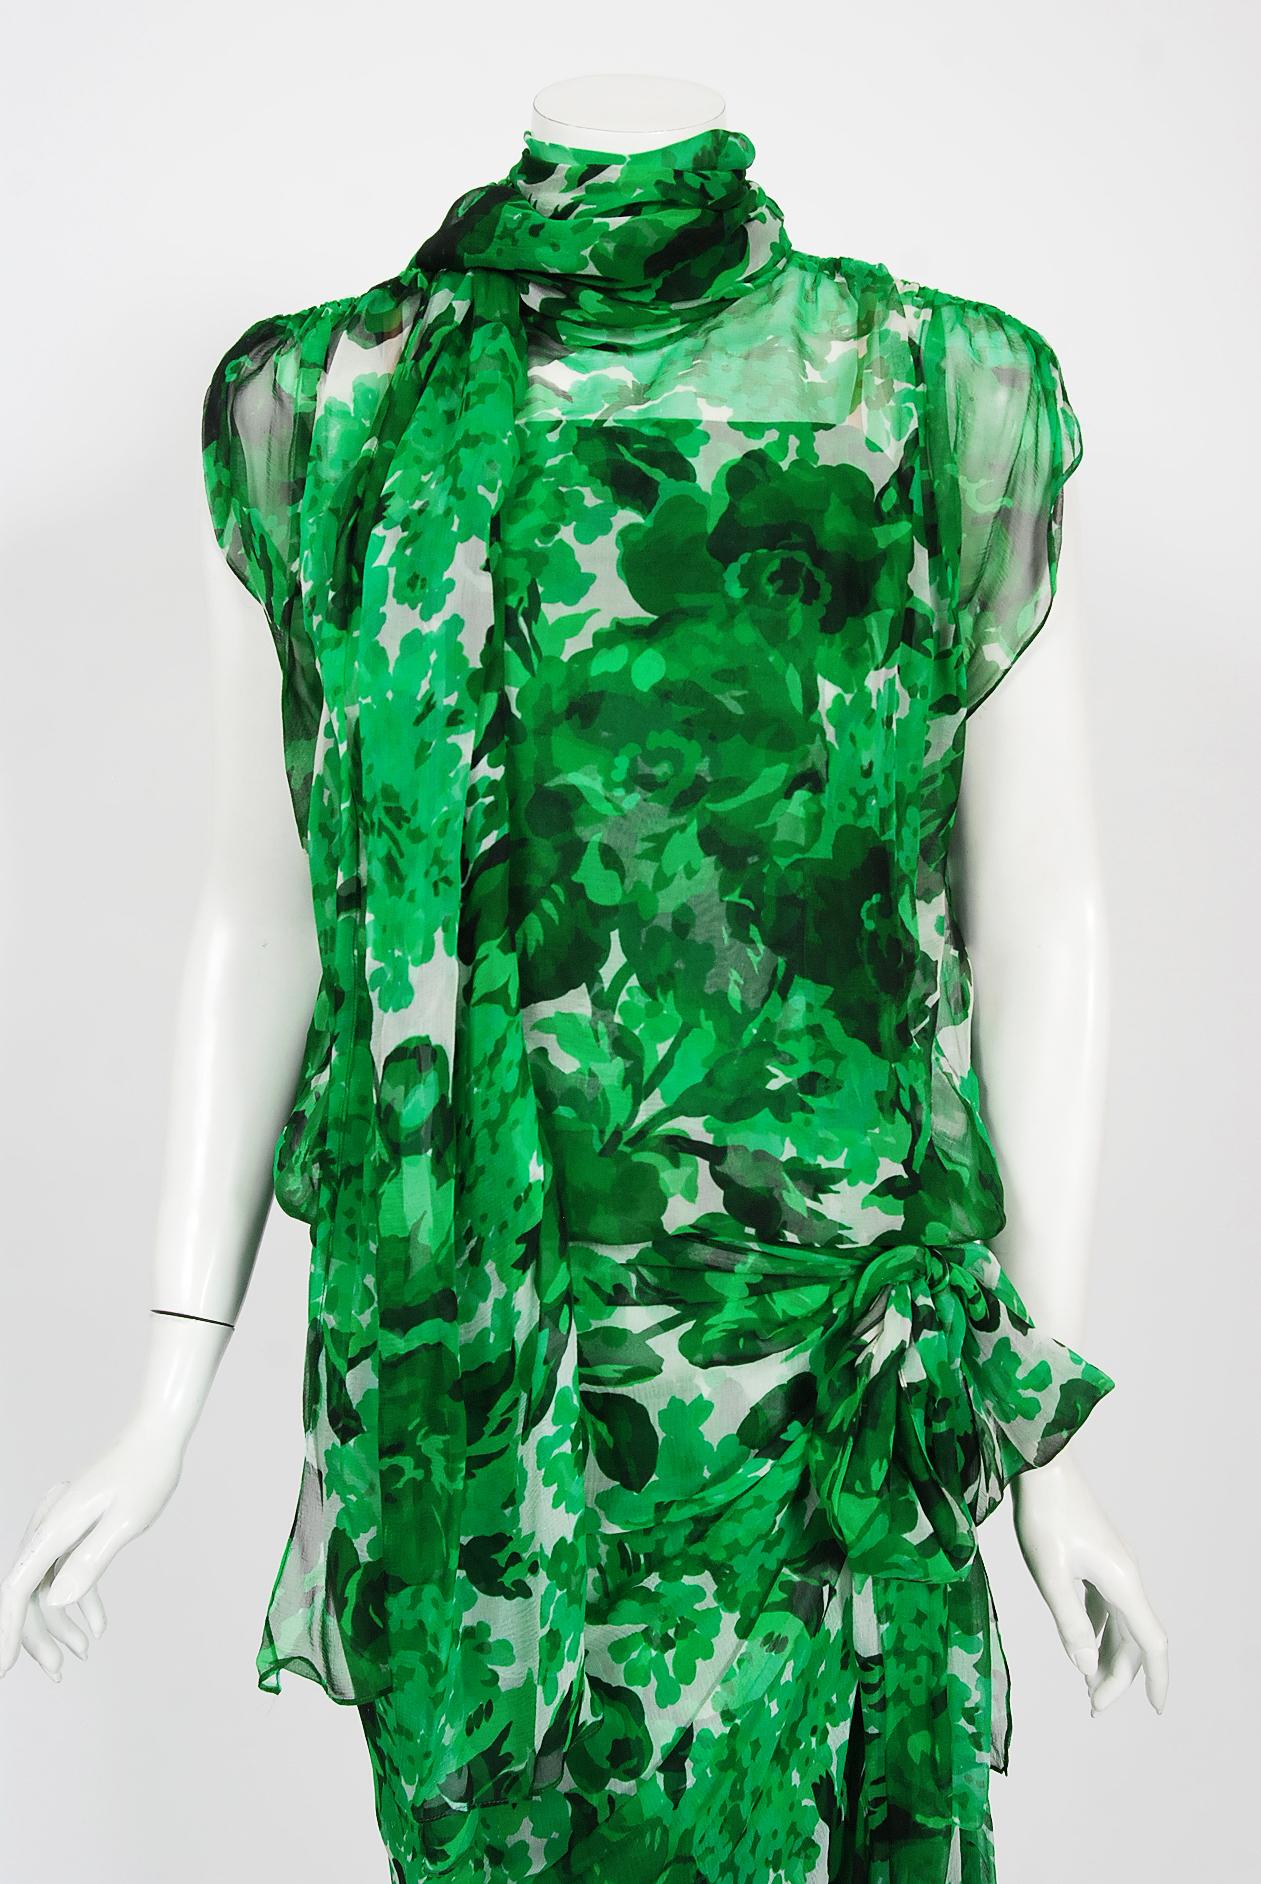 Une robe en mousseline de soie florale vert émeraude absolument magnifique de Givenchy datant de sa collection printemps/été 1992. Givenchy, le nom lui-même évoque le glamour, l'élégance raffinée, la simplicité et le style. Sa marque de fabrique,